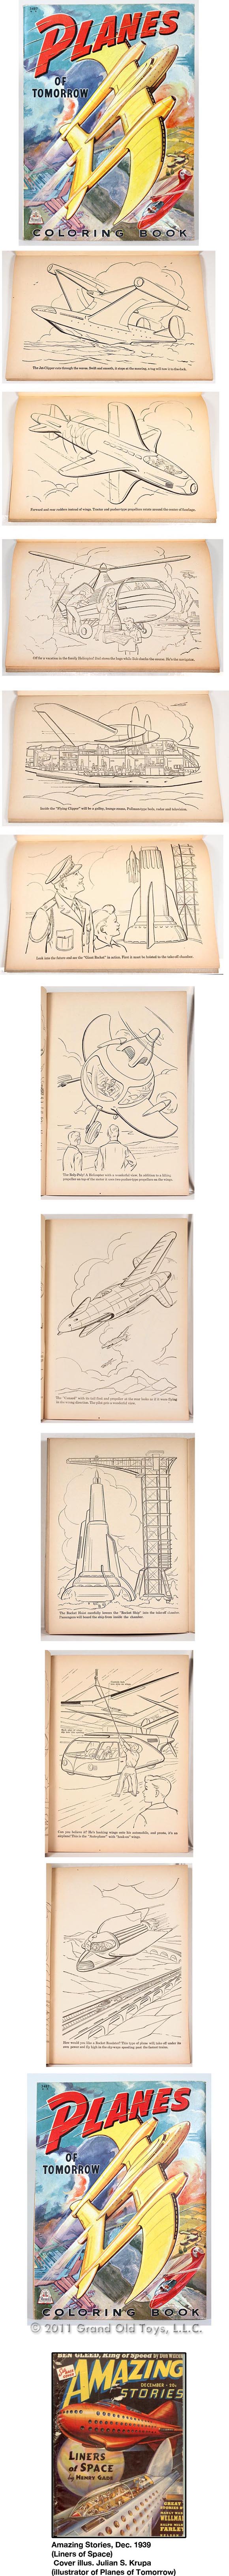 1944 Planes Of Tomorrow Coloring Book, Merrill Pubications